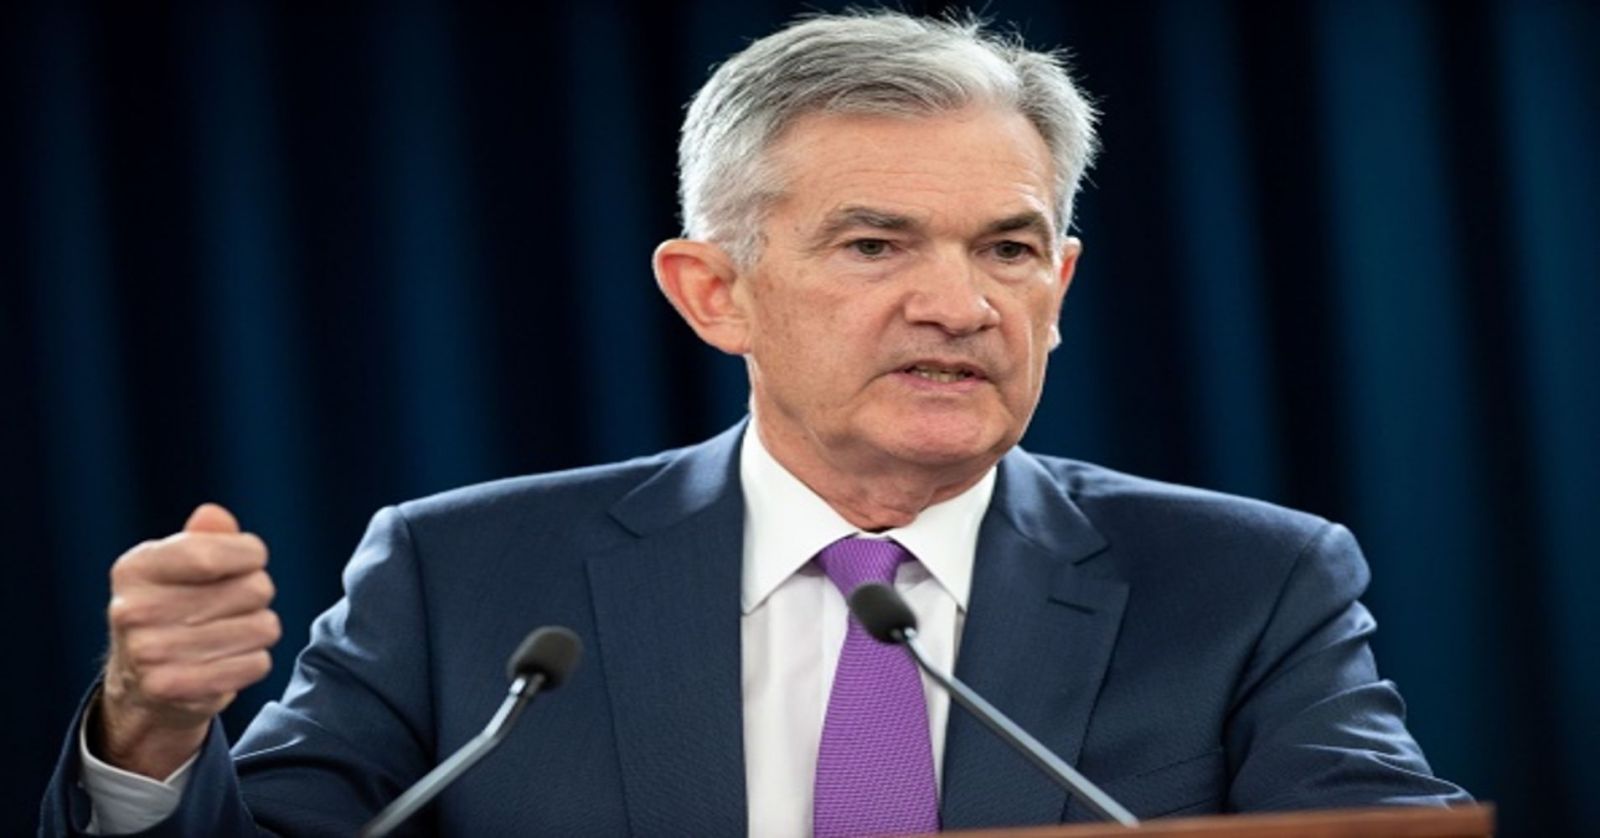 Nội dung bài phát biểu của chủ tịch Fed Powell